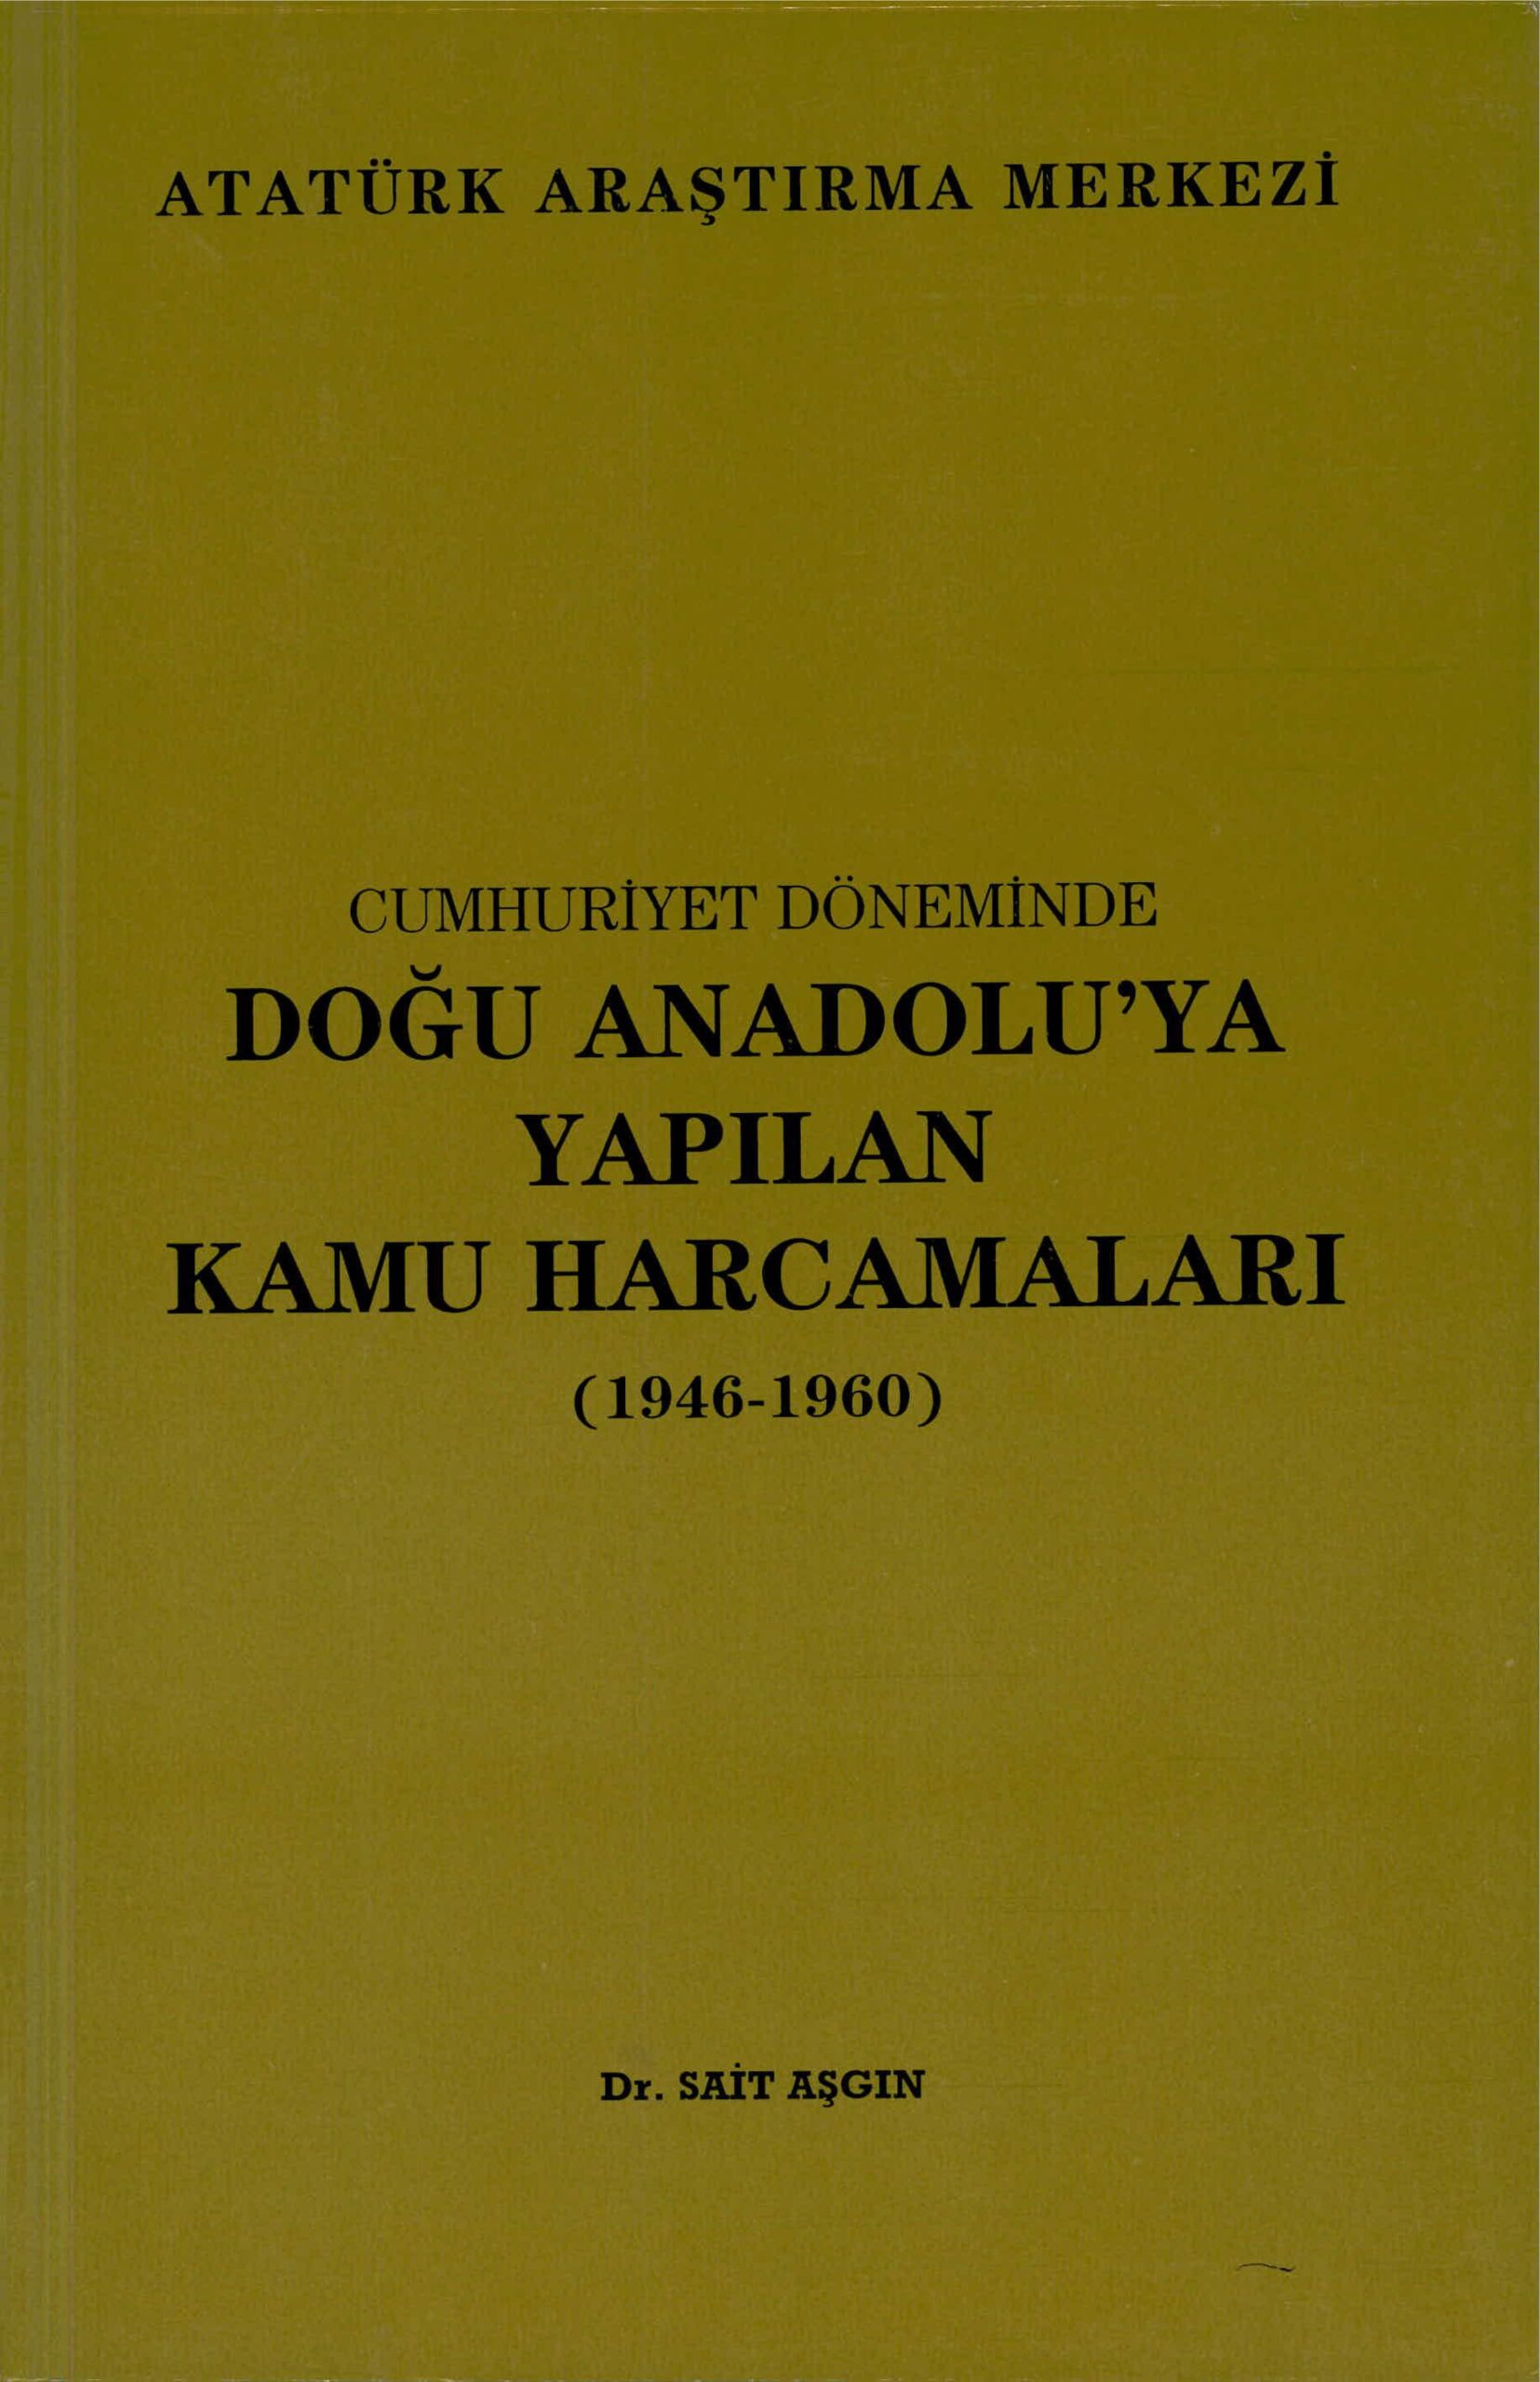 Cumhuriyet Döneminde Doğu Anadolu’ya Yapılan Kamu Harcamaları (1946-1960)